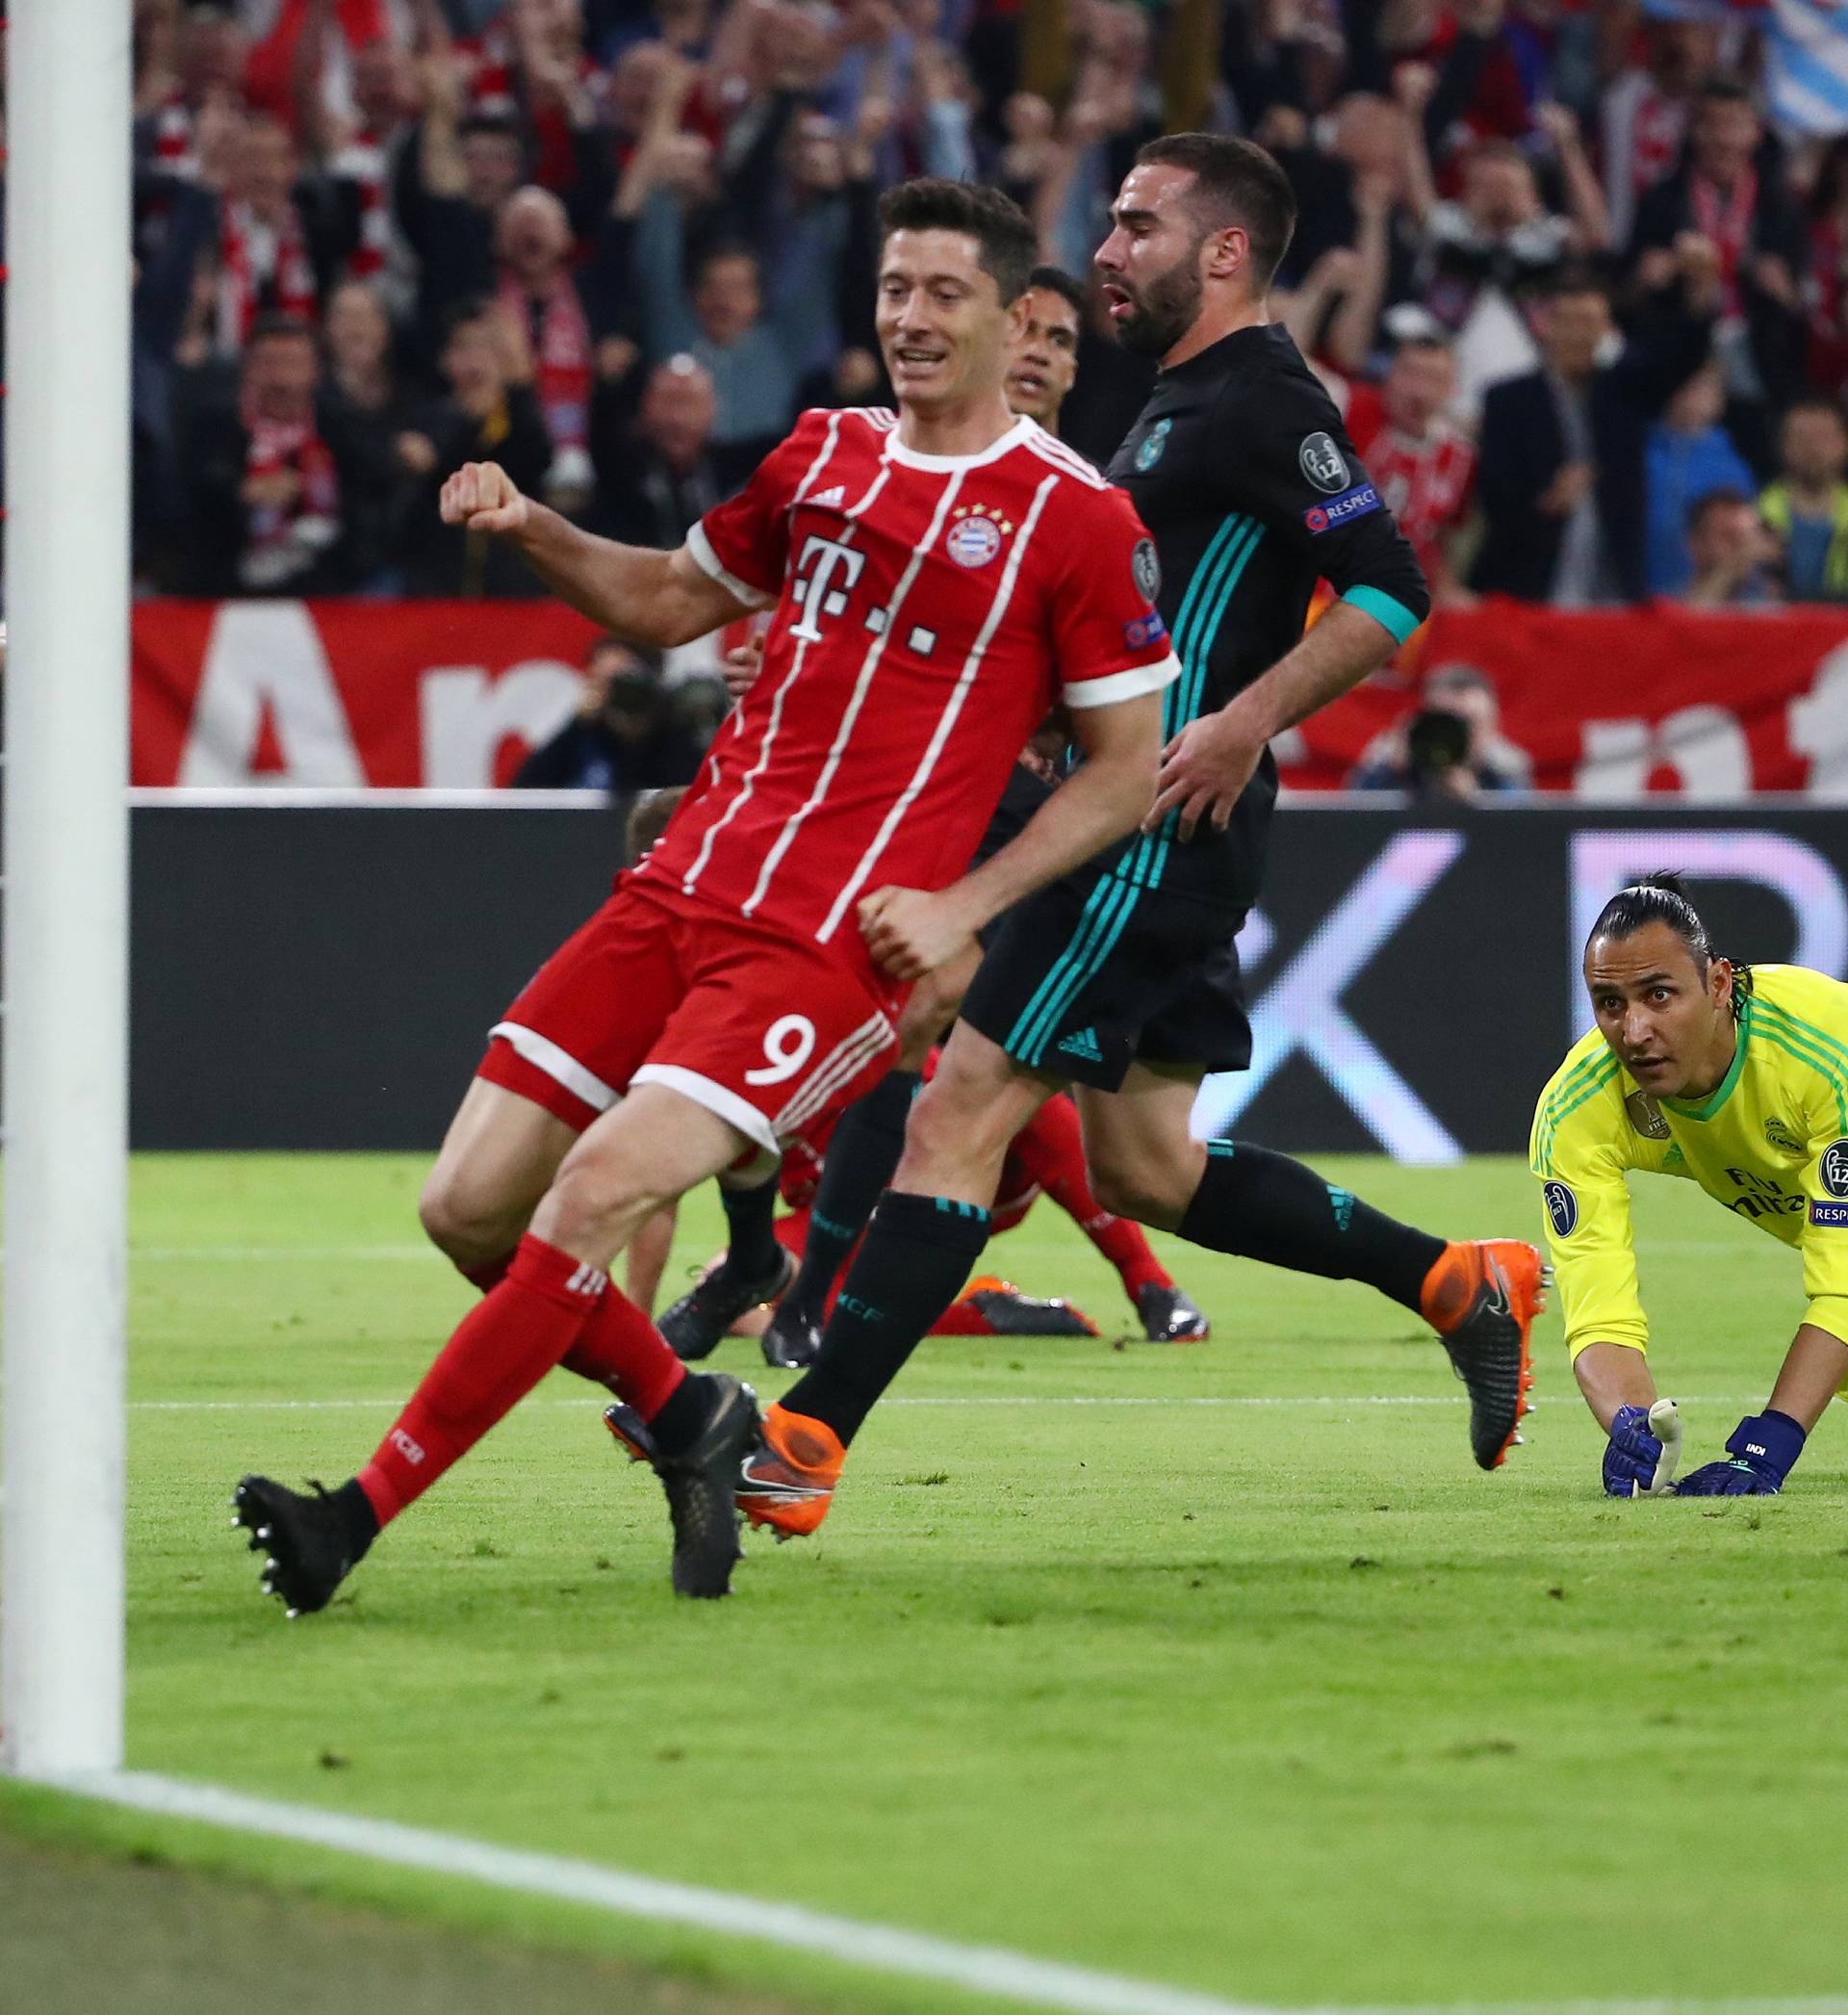 Champions League Semi Final First Leg - Bayern Munich vs Real Madrid